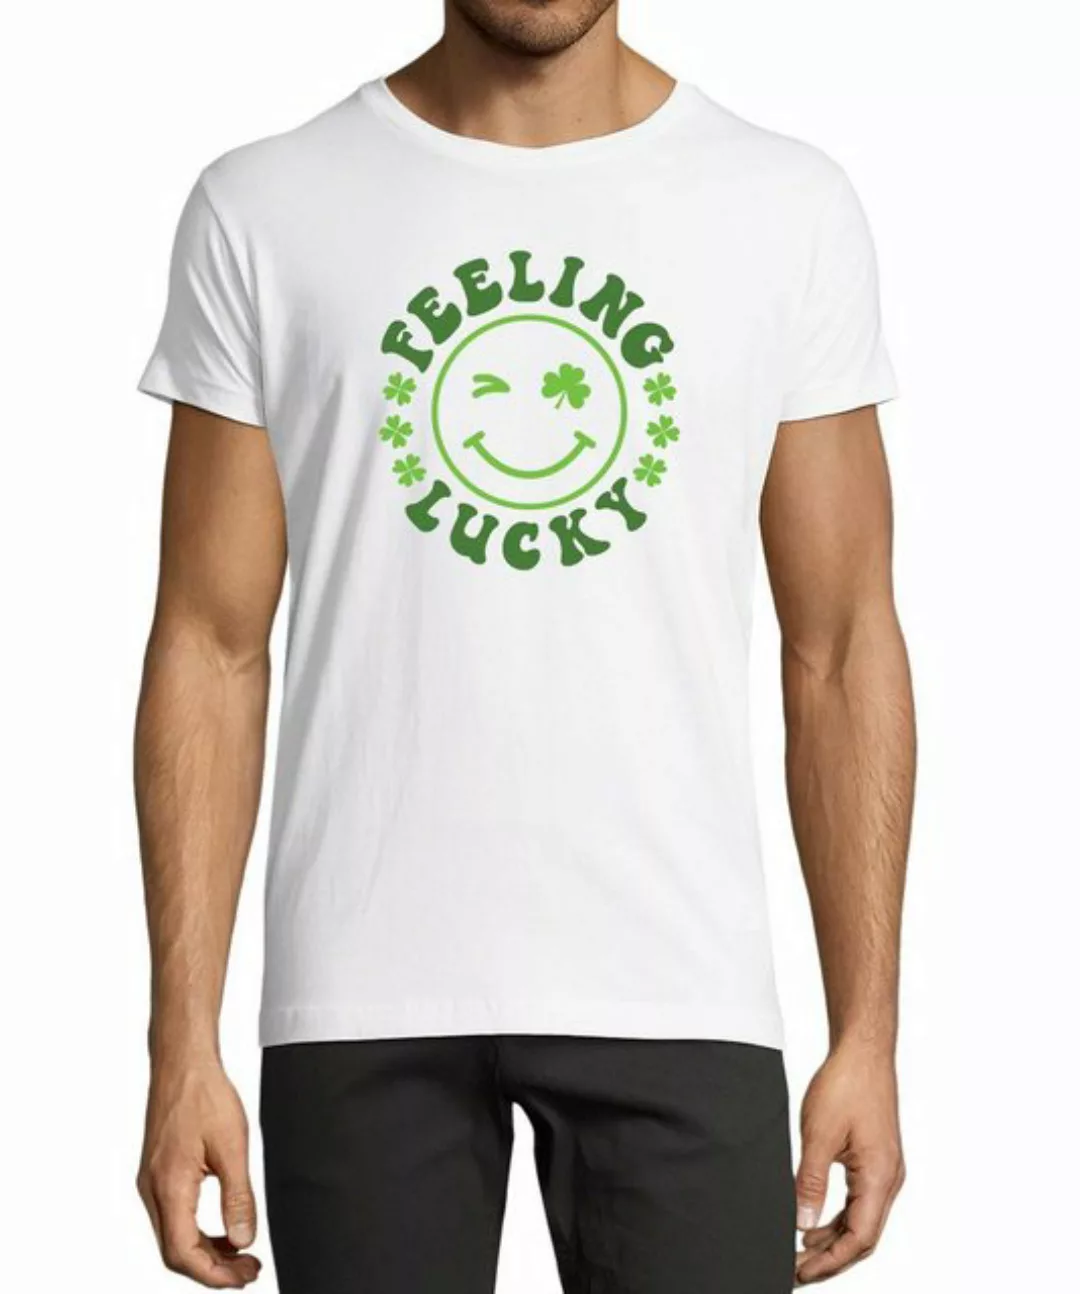 MyDesign24 T-Shirt Herren Smiley Print Shirt - Zwinkernder Smiley mit Kleeb günstig online kaufen